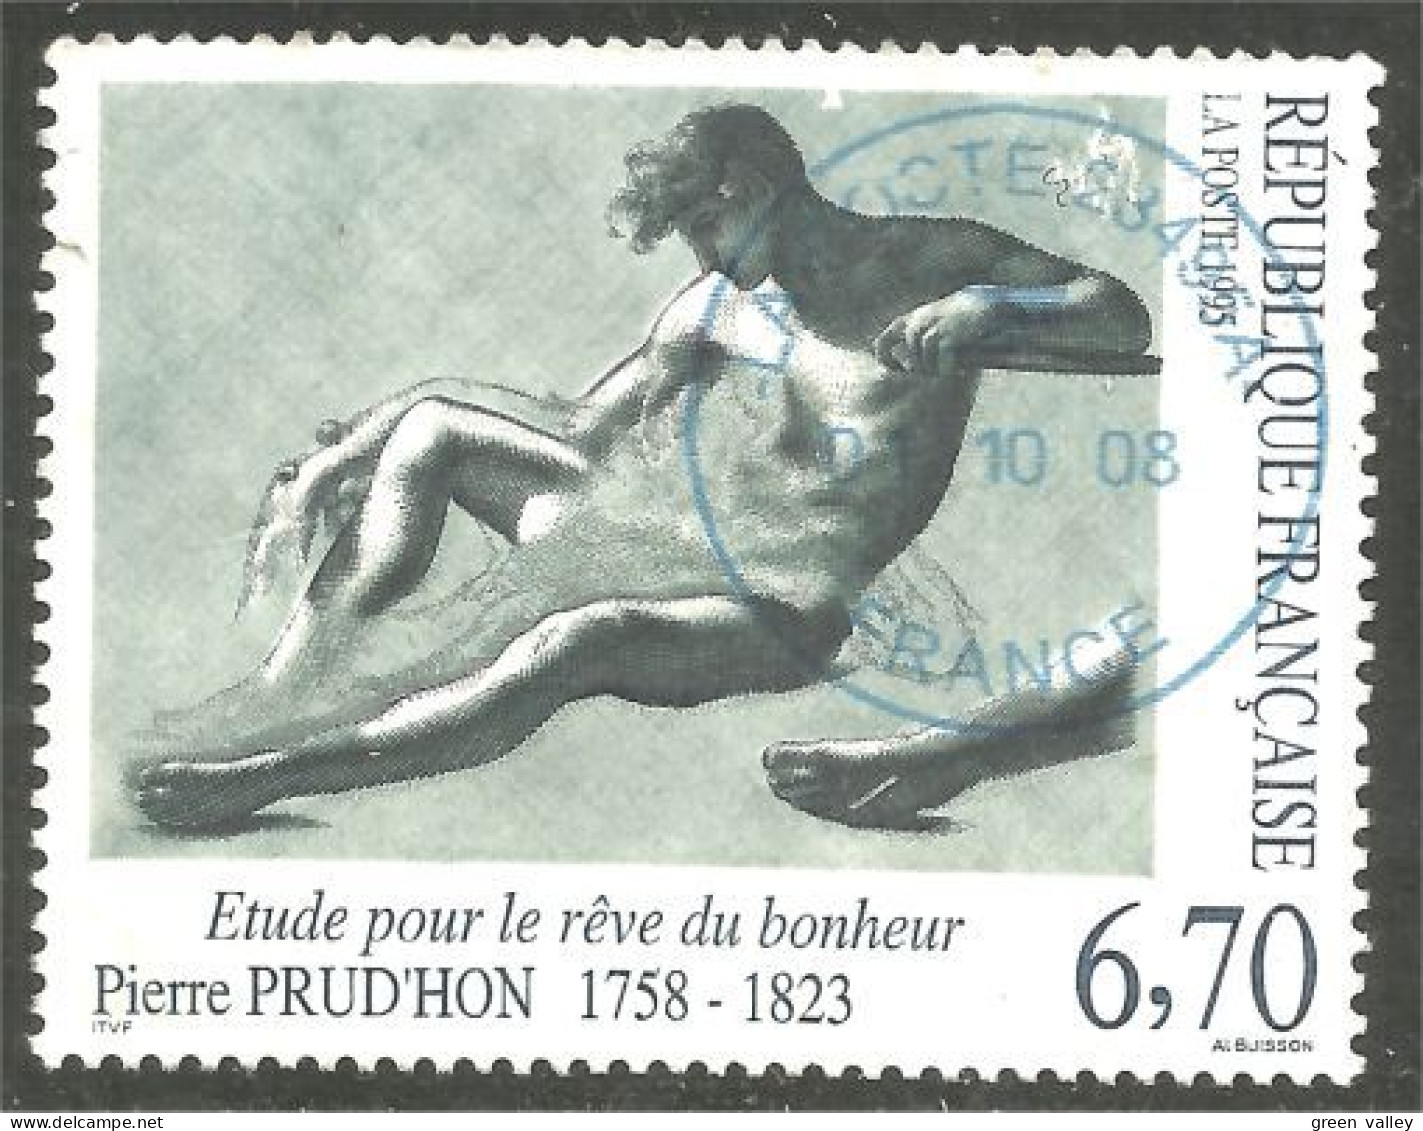 331nf-64 France Dessin Pierre Prudho Drawing Étude Bonheur - Gebraucht